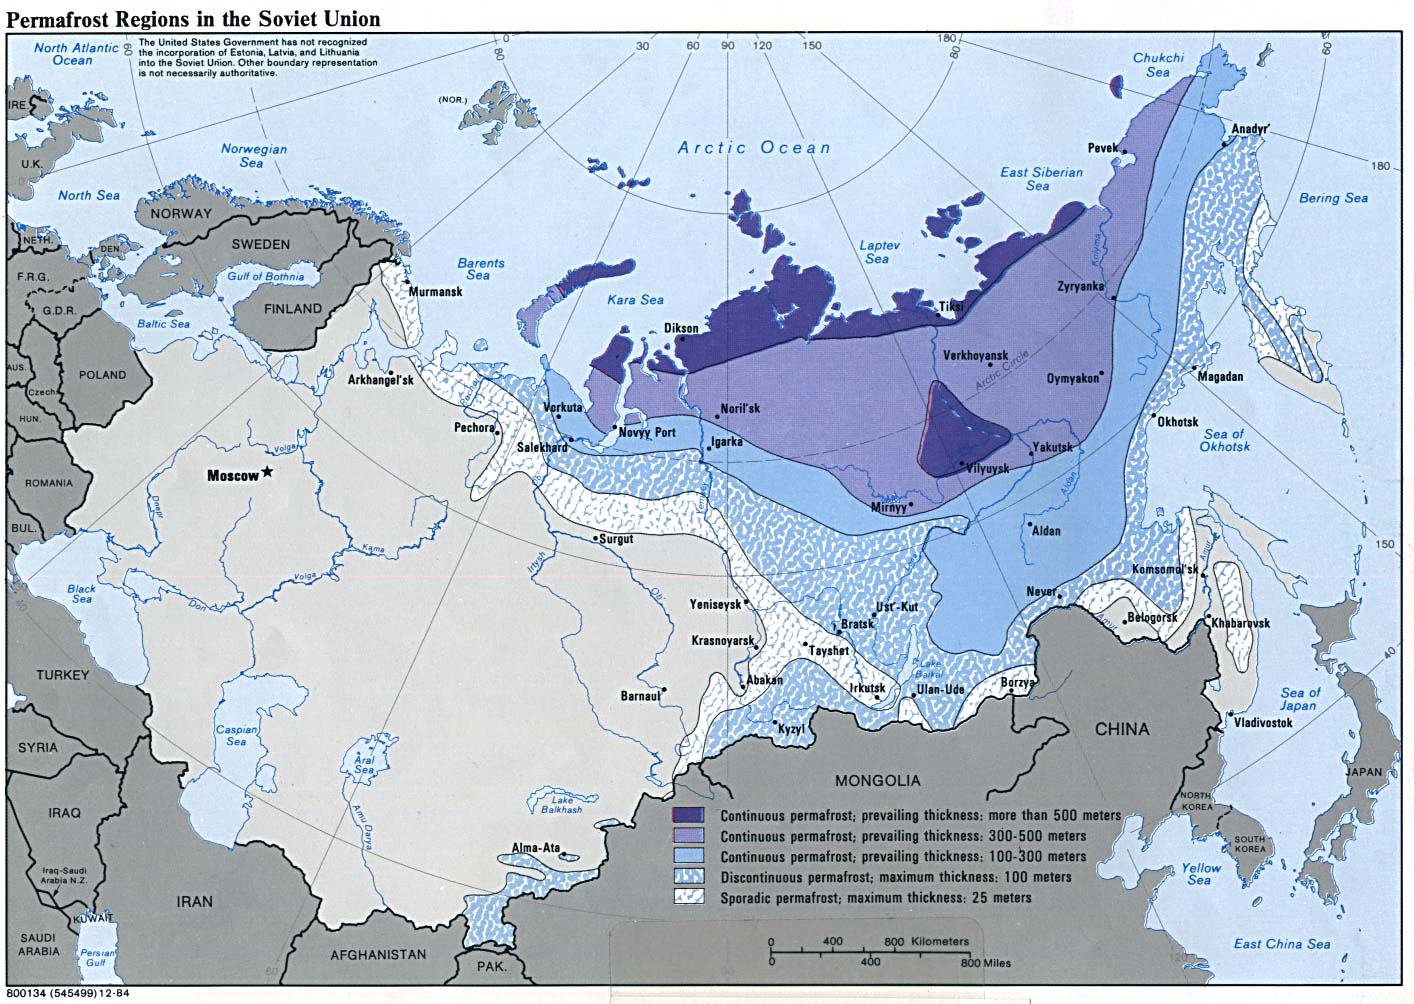 Former-Soviet-Union-Permafrost-regions-1984.jpg